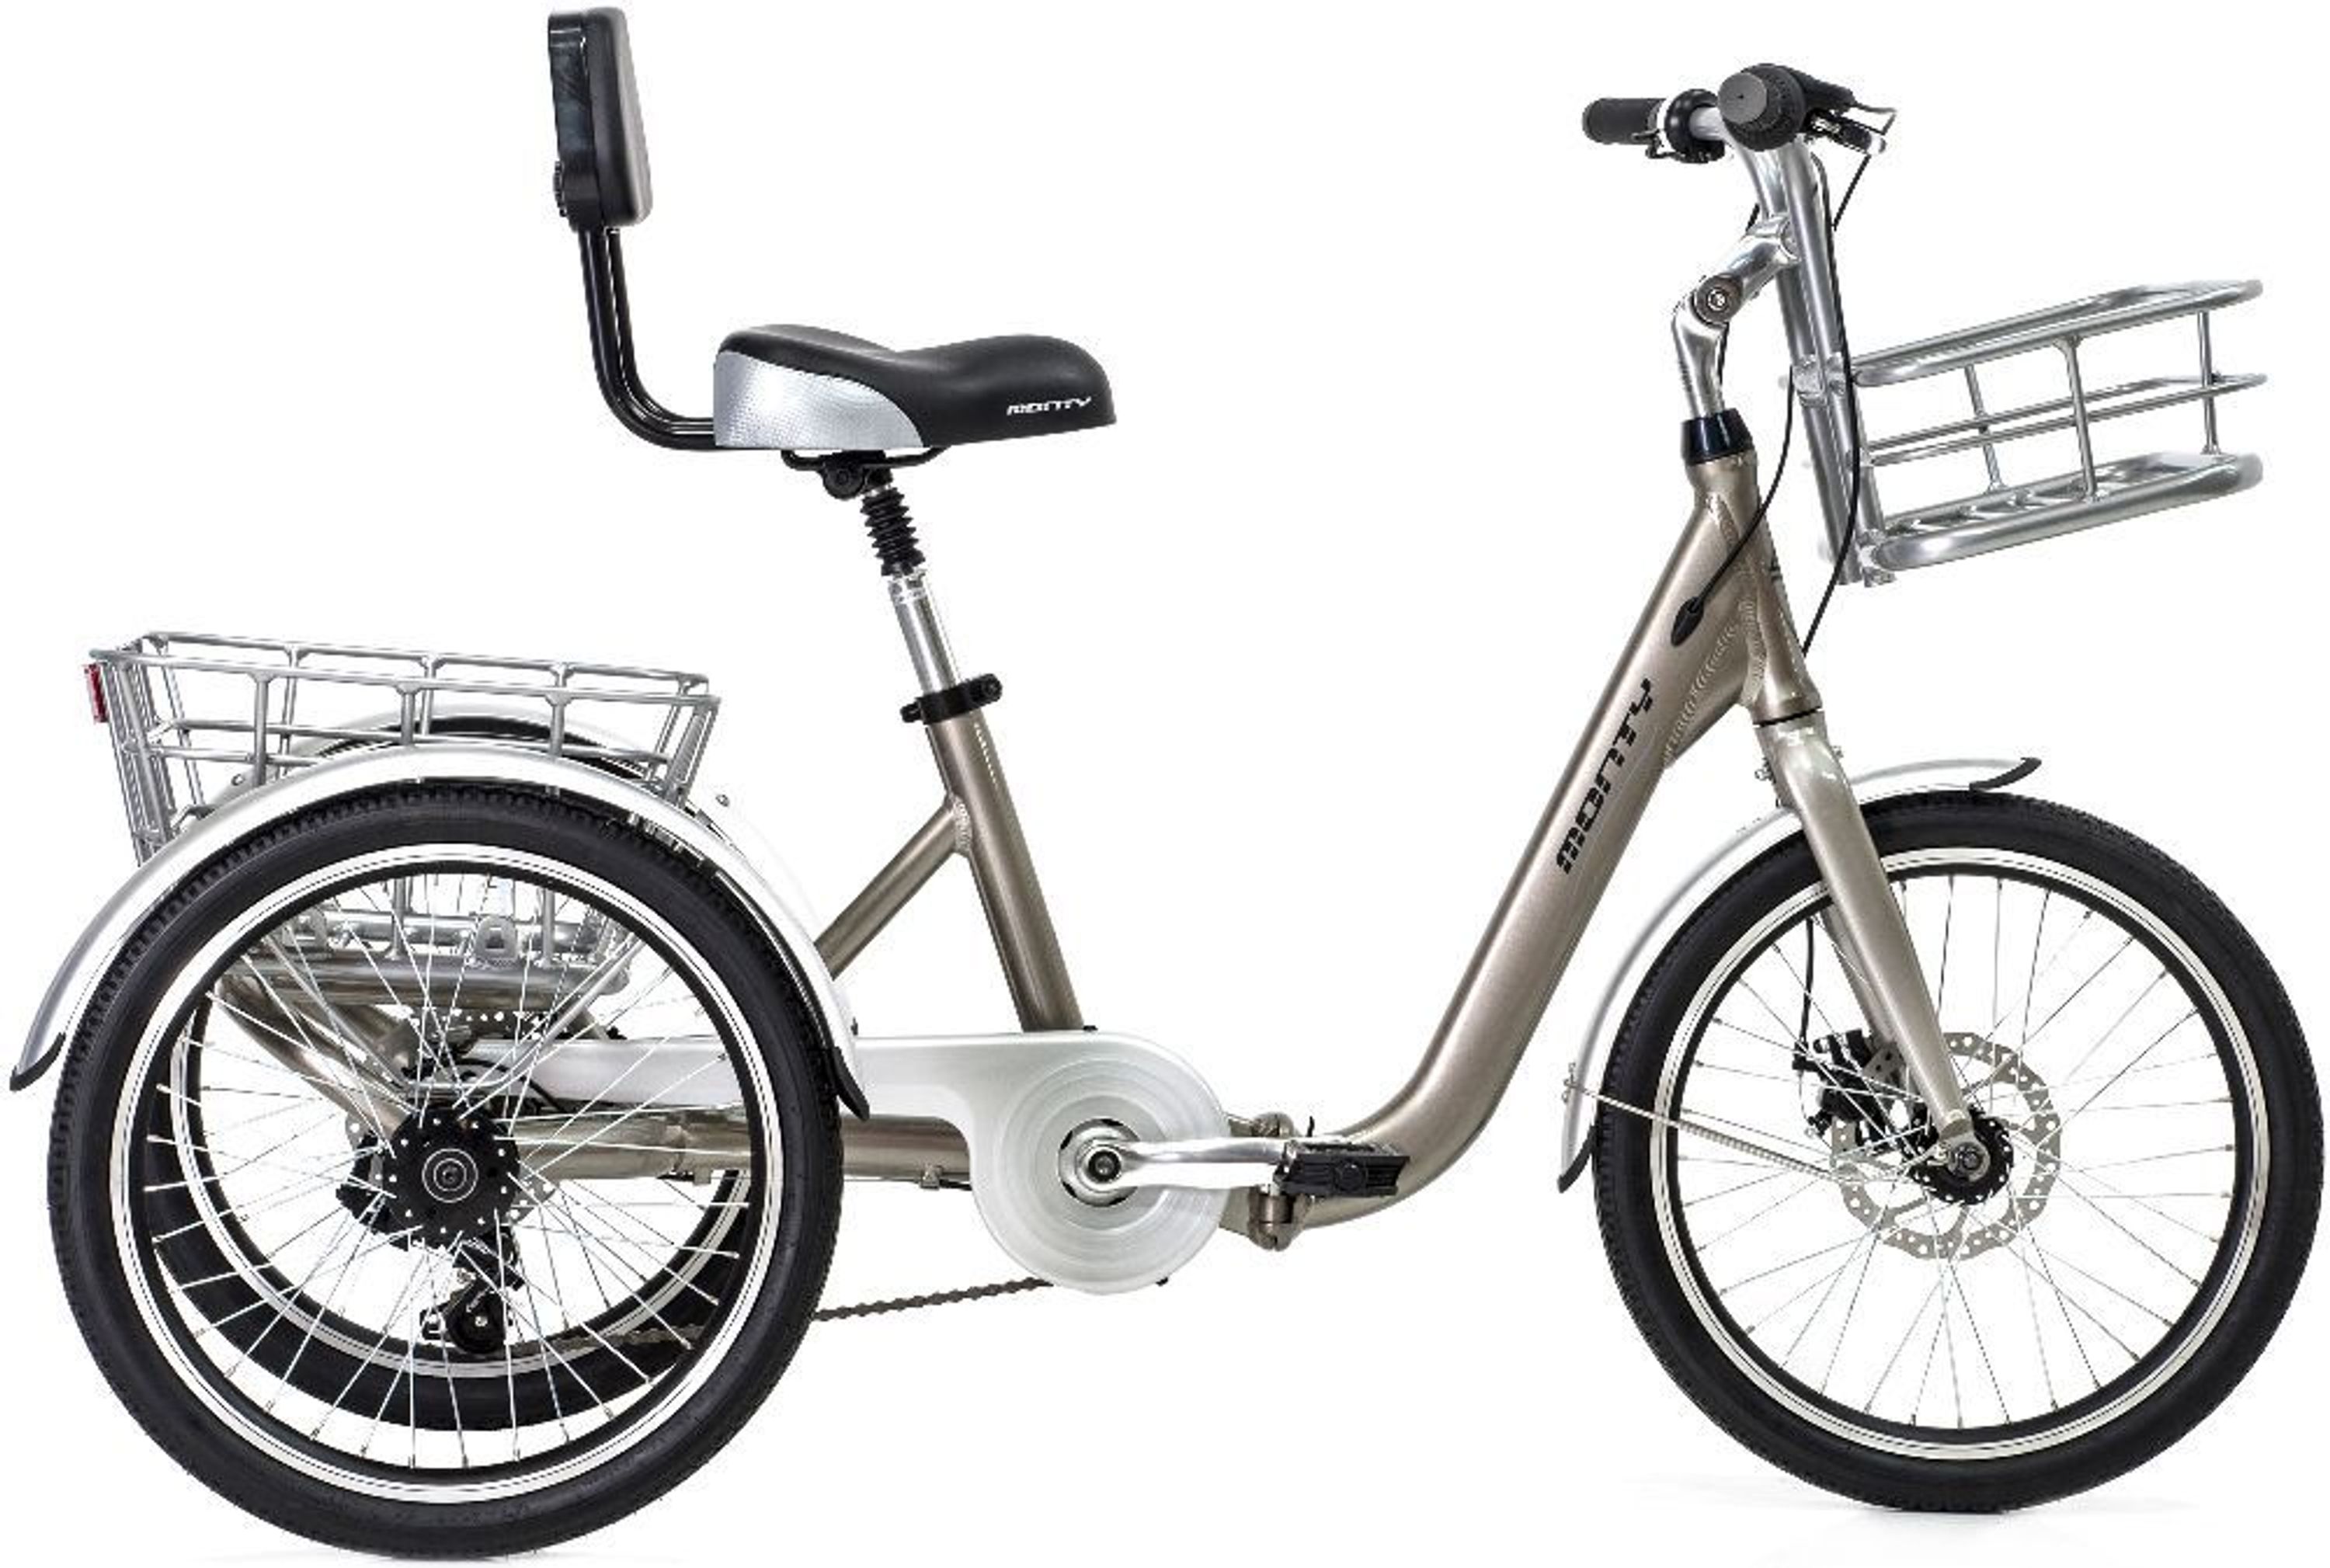 Klappbares Dreirad für Erwachsene Monty 608 Senioren